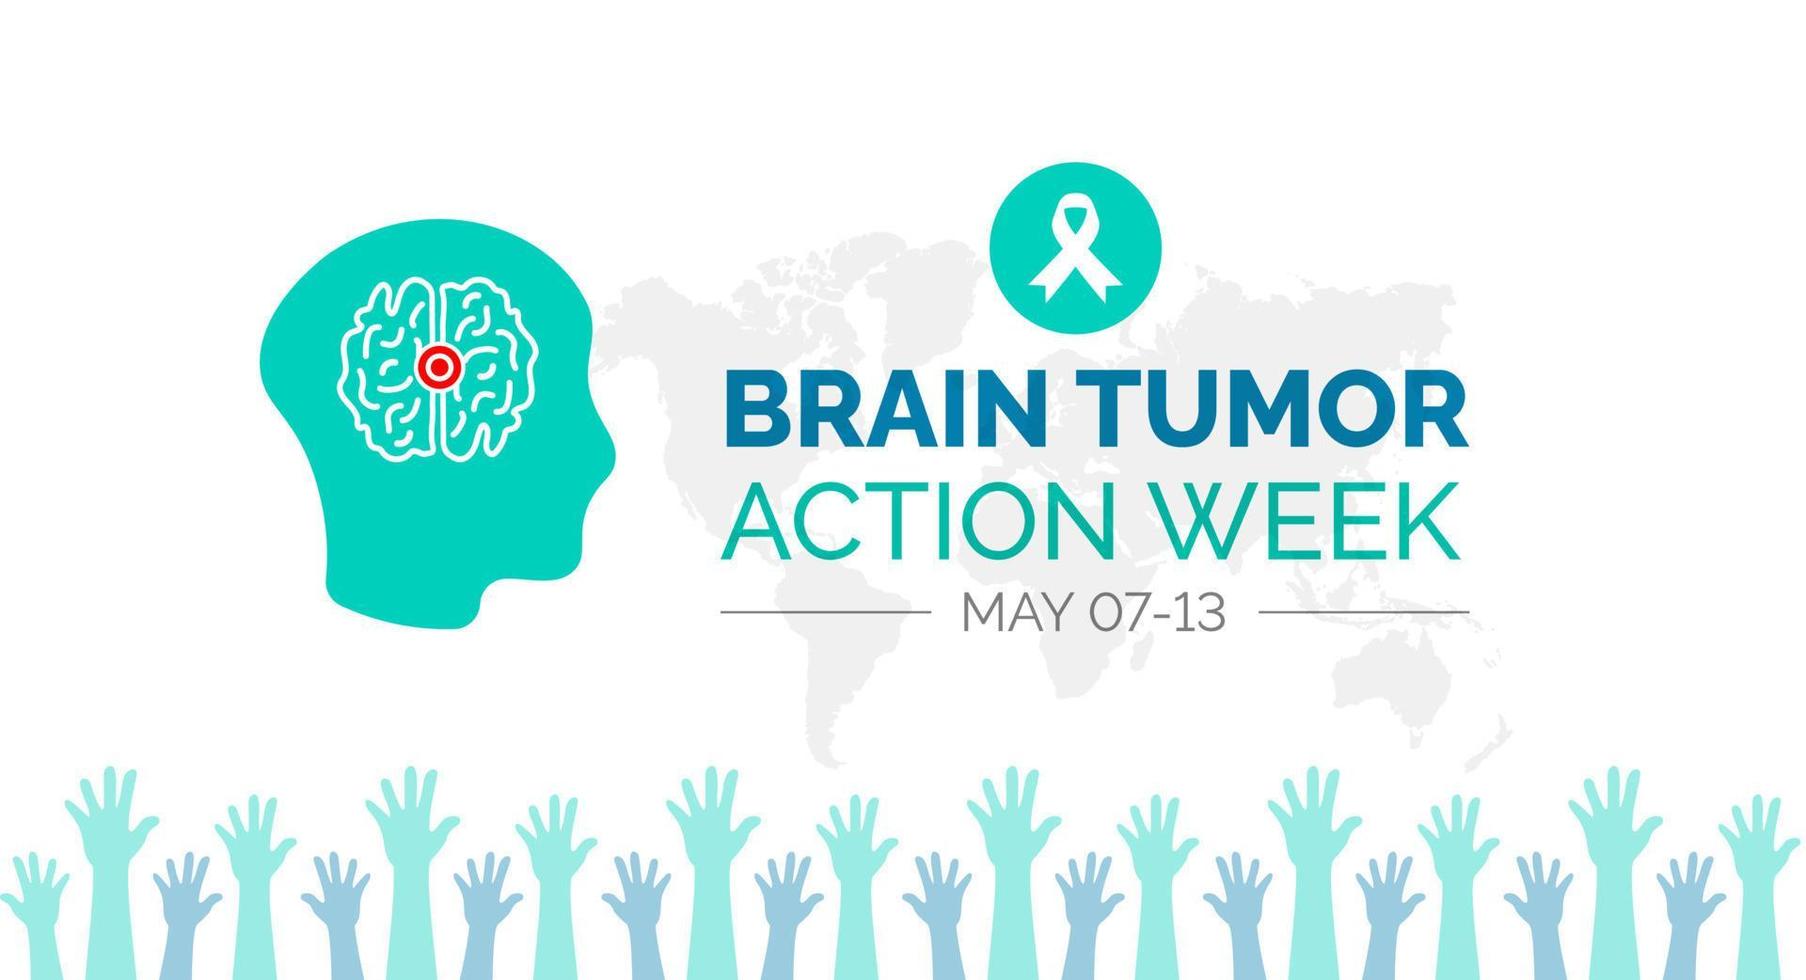 Gehirn Tumor Aktion Woche Hintergrund oder Banner Design Vorlage gefeiert im kann vektor